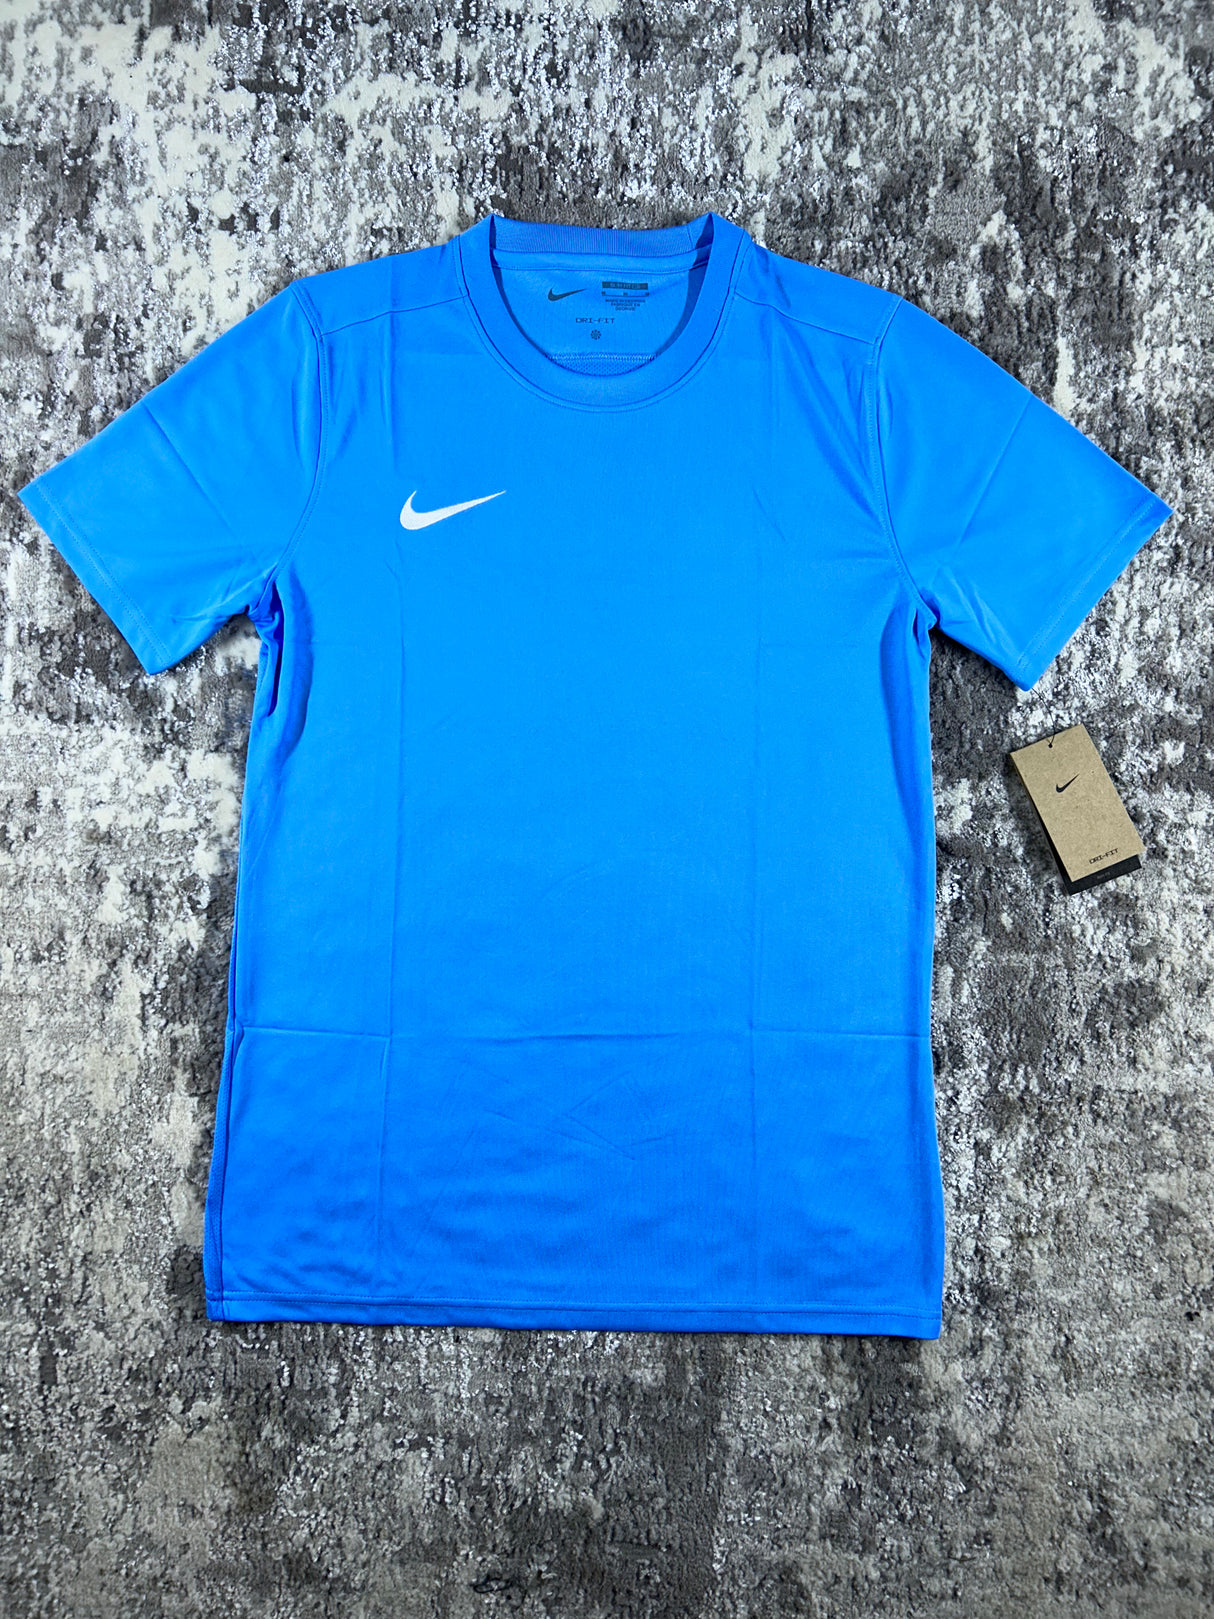 Nike - Dri Fit T Shirt - Sky Blue